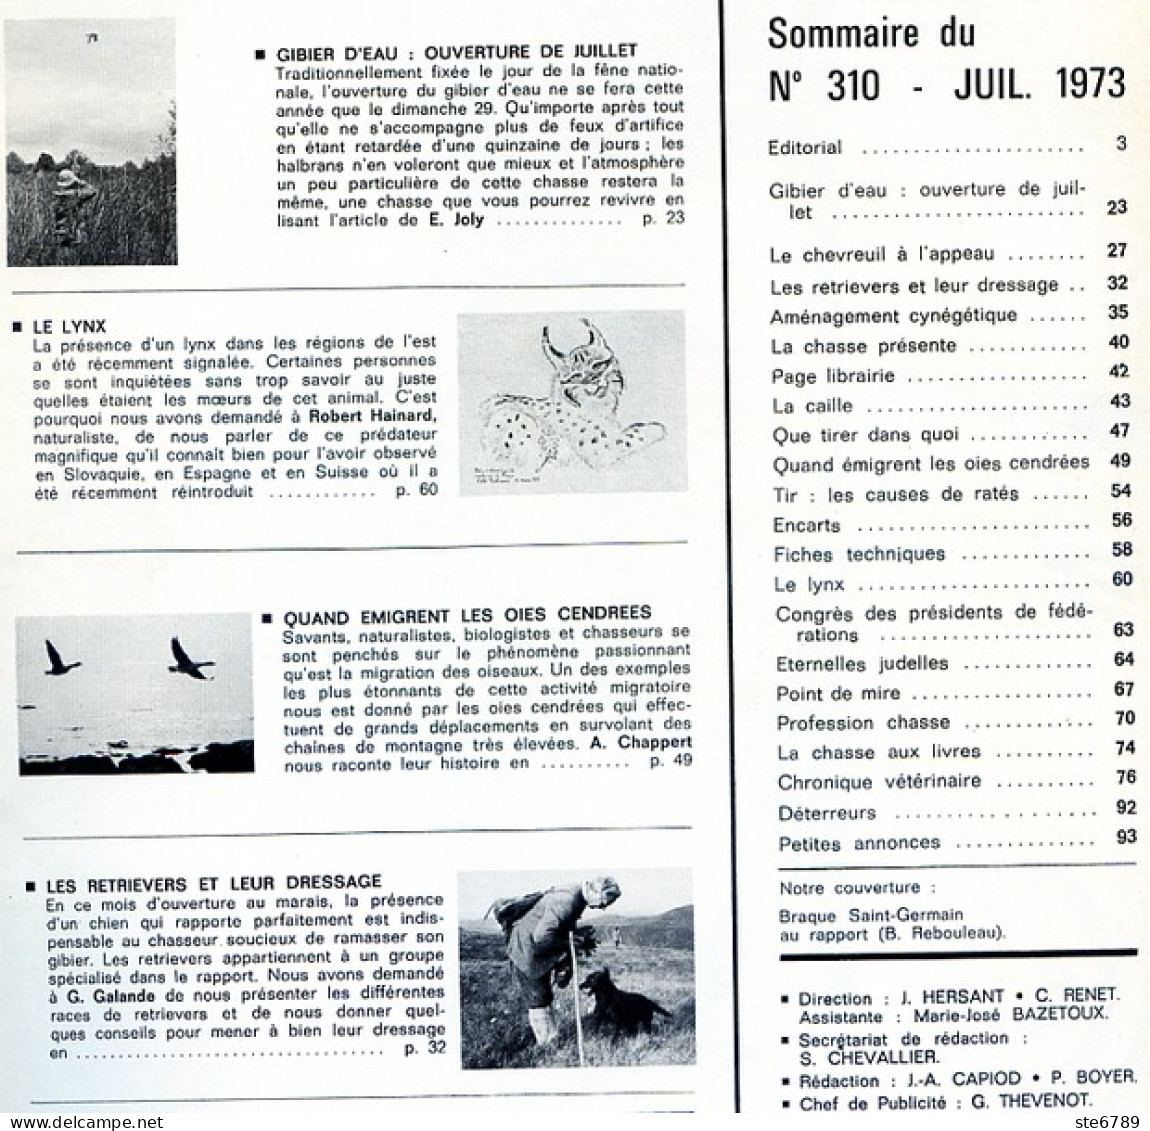 La Revue Nationale De LA CHASSE N° 310 Juillet 1973 Le Lynx , Gibier D'eau , Oies Cendrées , Chiens Retrievers - Hunting & Fishing